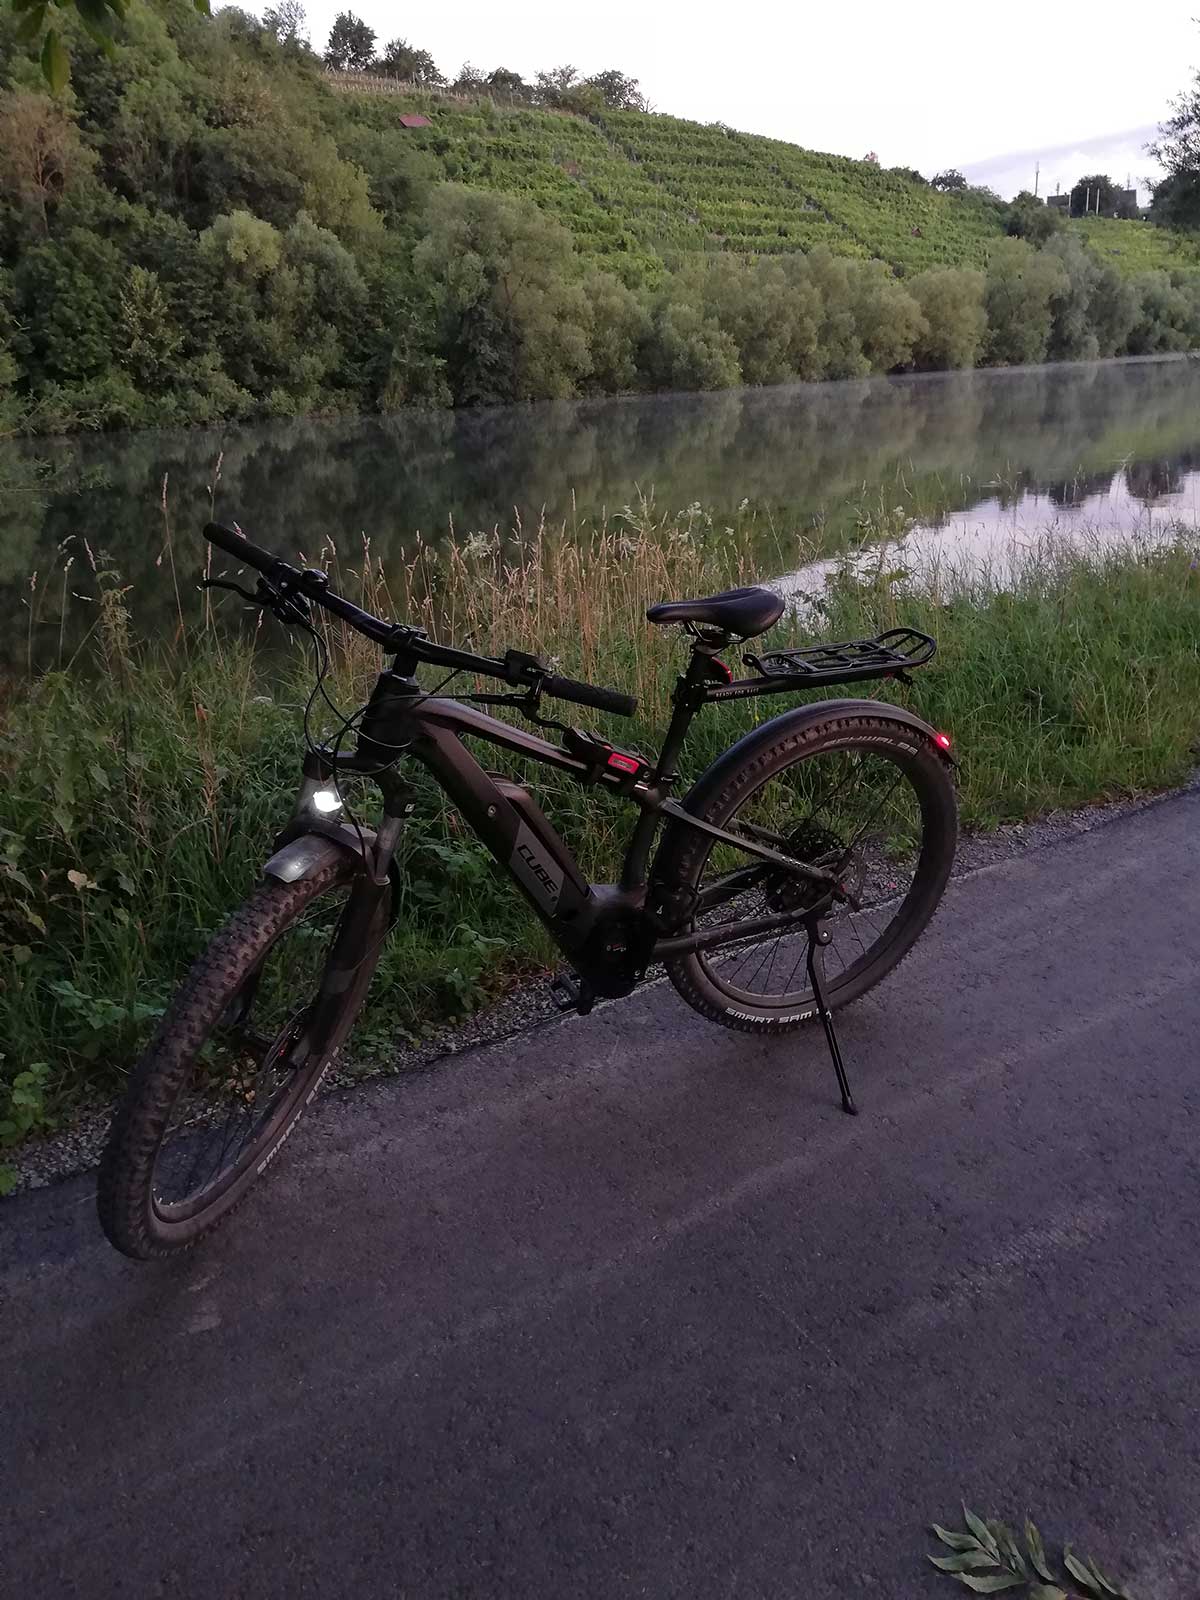 JobRad Moment von Heike mit Fahrrad auf Radweg am Fluss, am anderen Ufer Weinberge